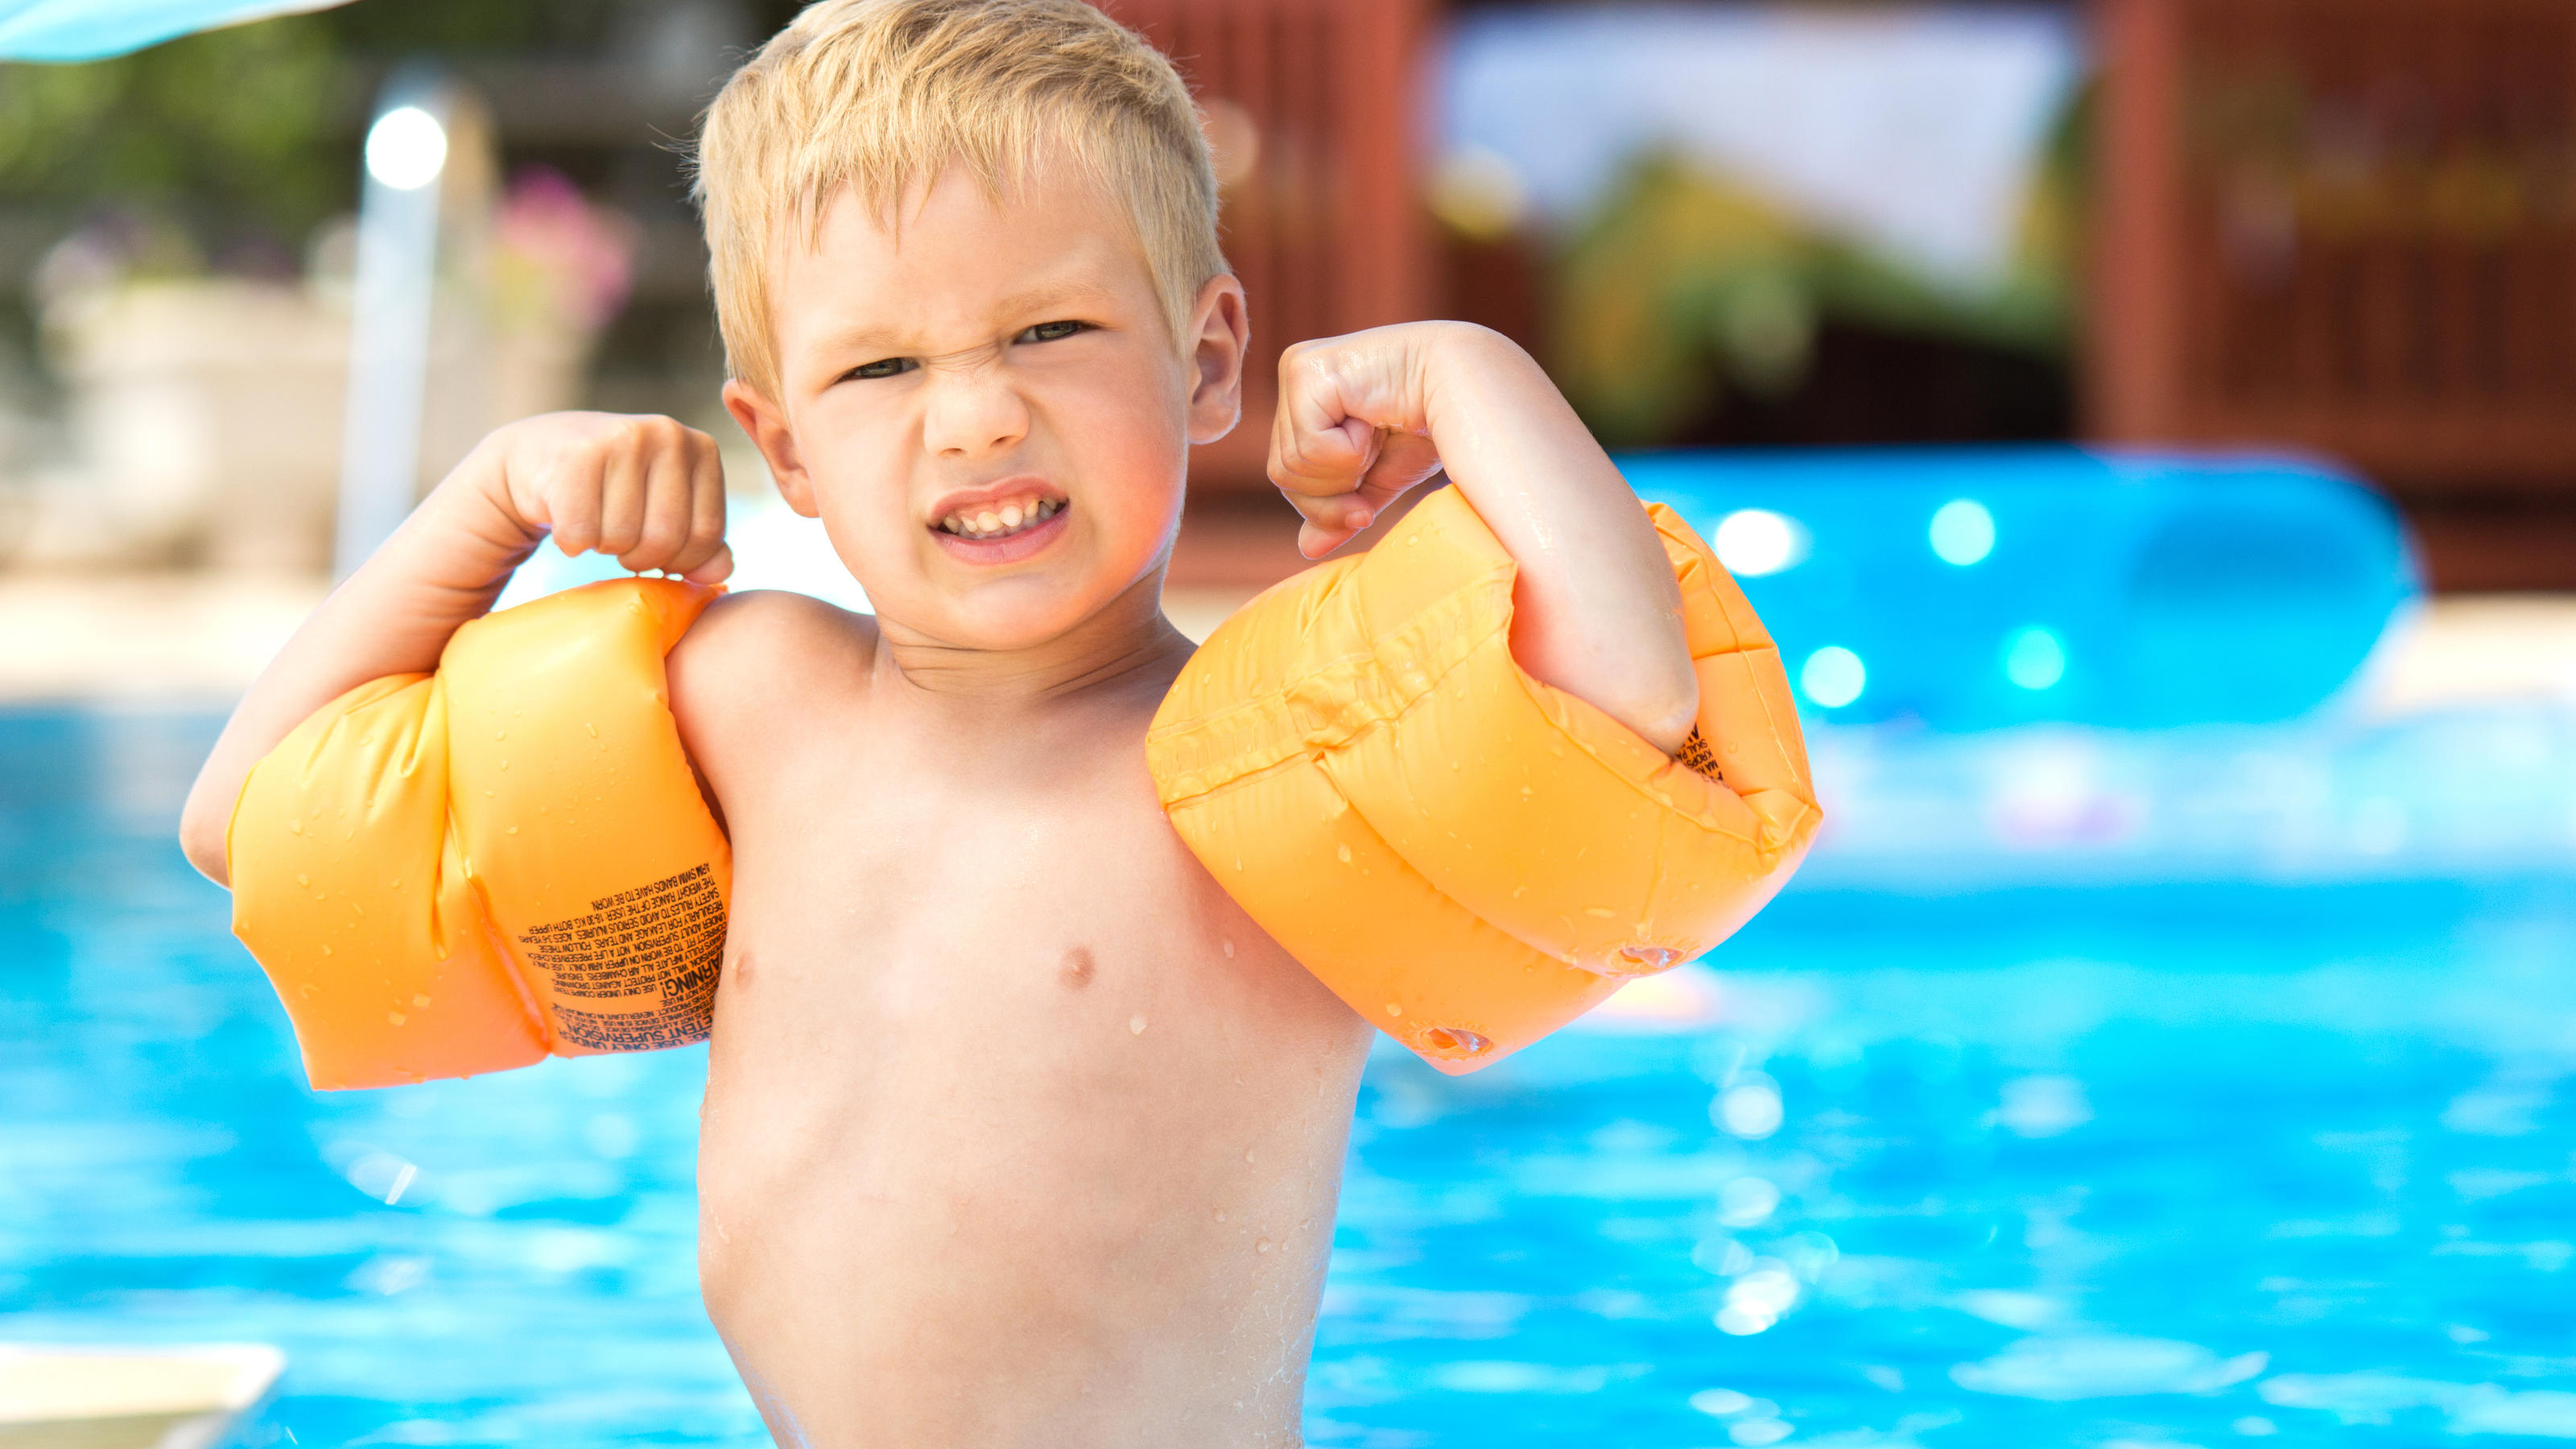 Ein kleiner Junge steht am Beckenrand eines Schwimmbads und zeigt seine starken Armmuckis. An seinen Armen trägt er Schwimmflügel.